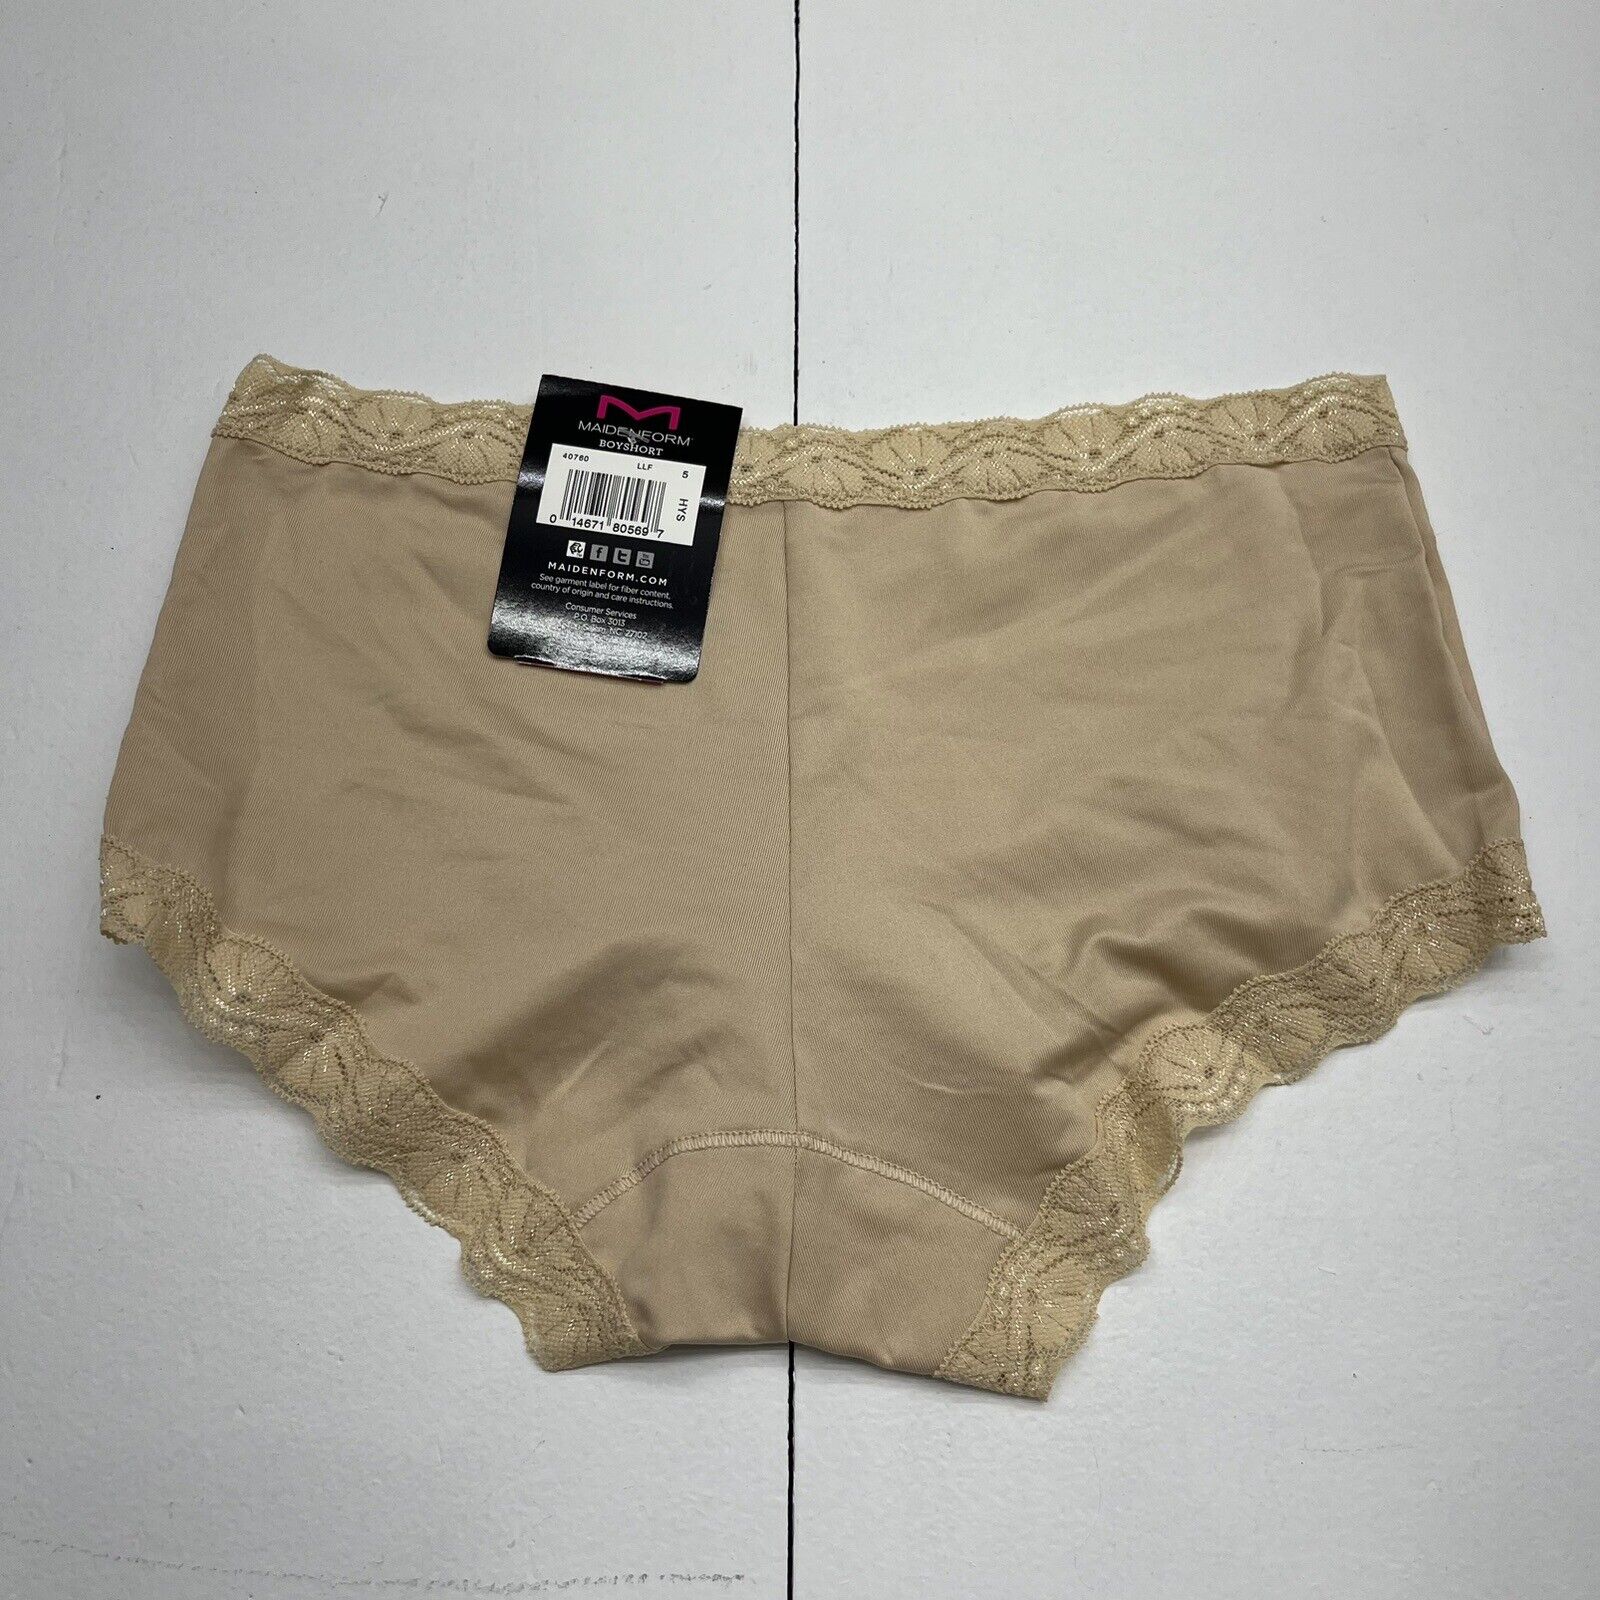 Maiden Form Beige Boyshort Lace Trim Underwear Womens Size Small NEW -  beyond exchange